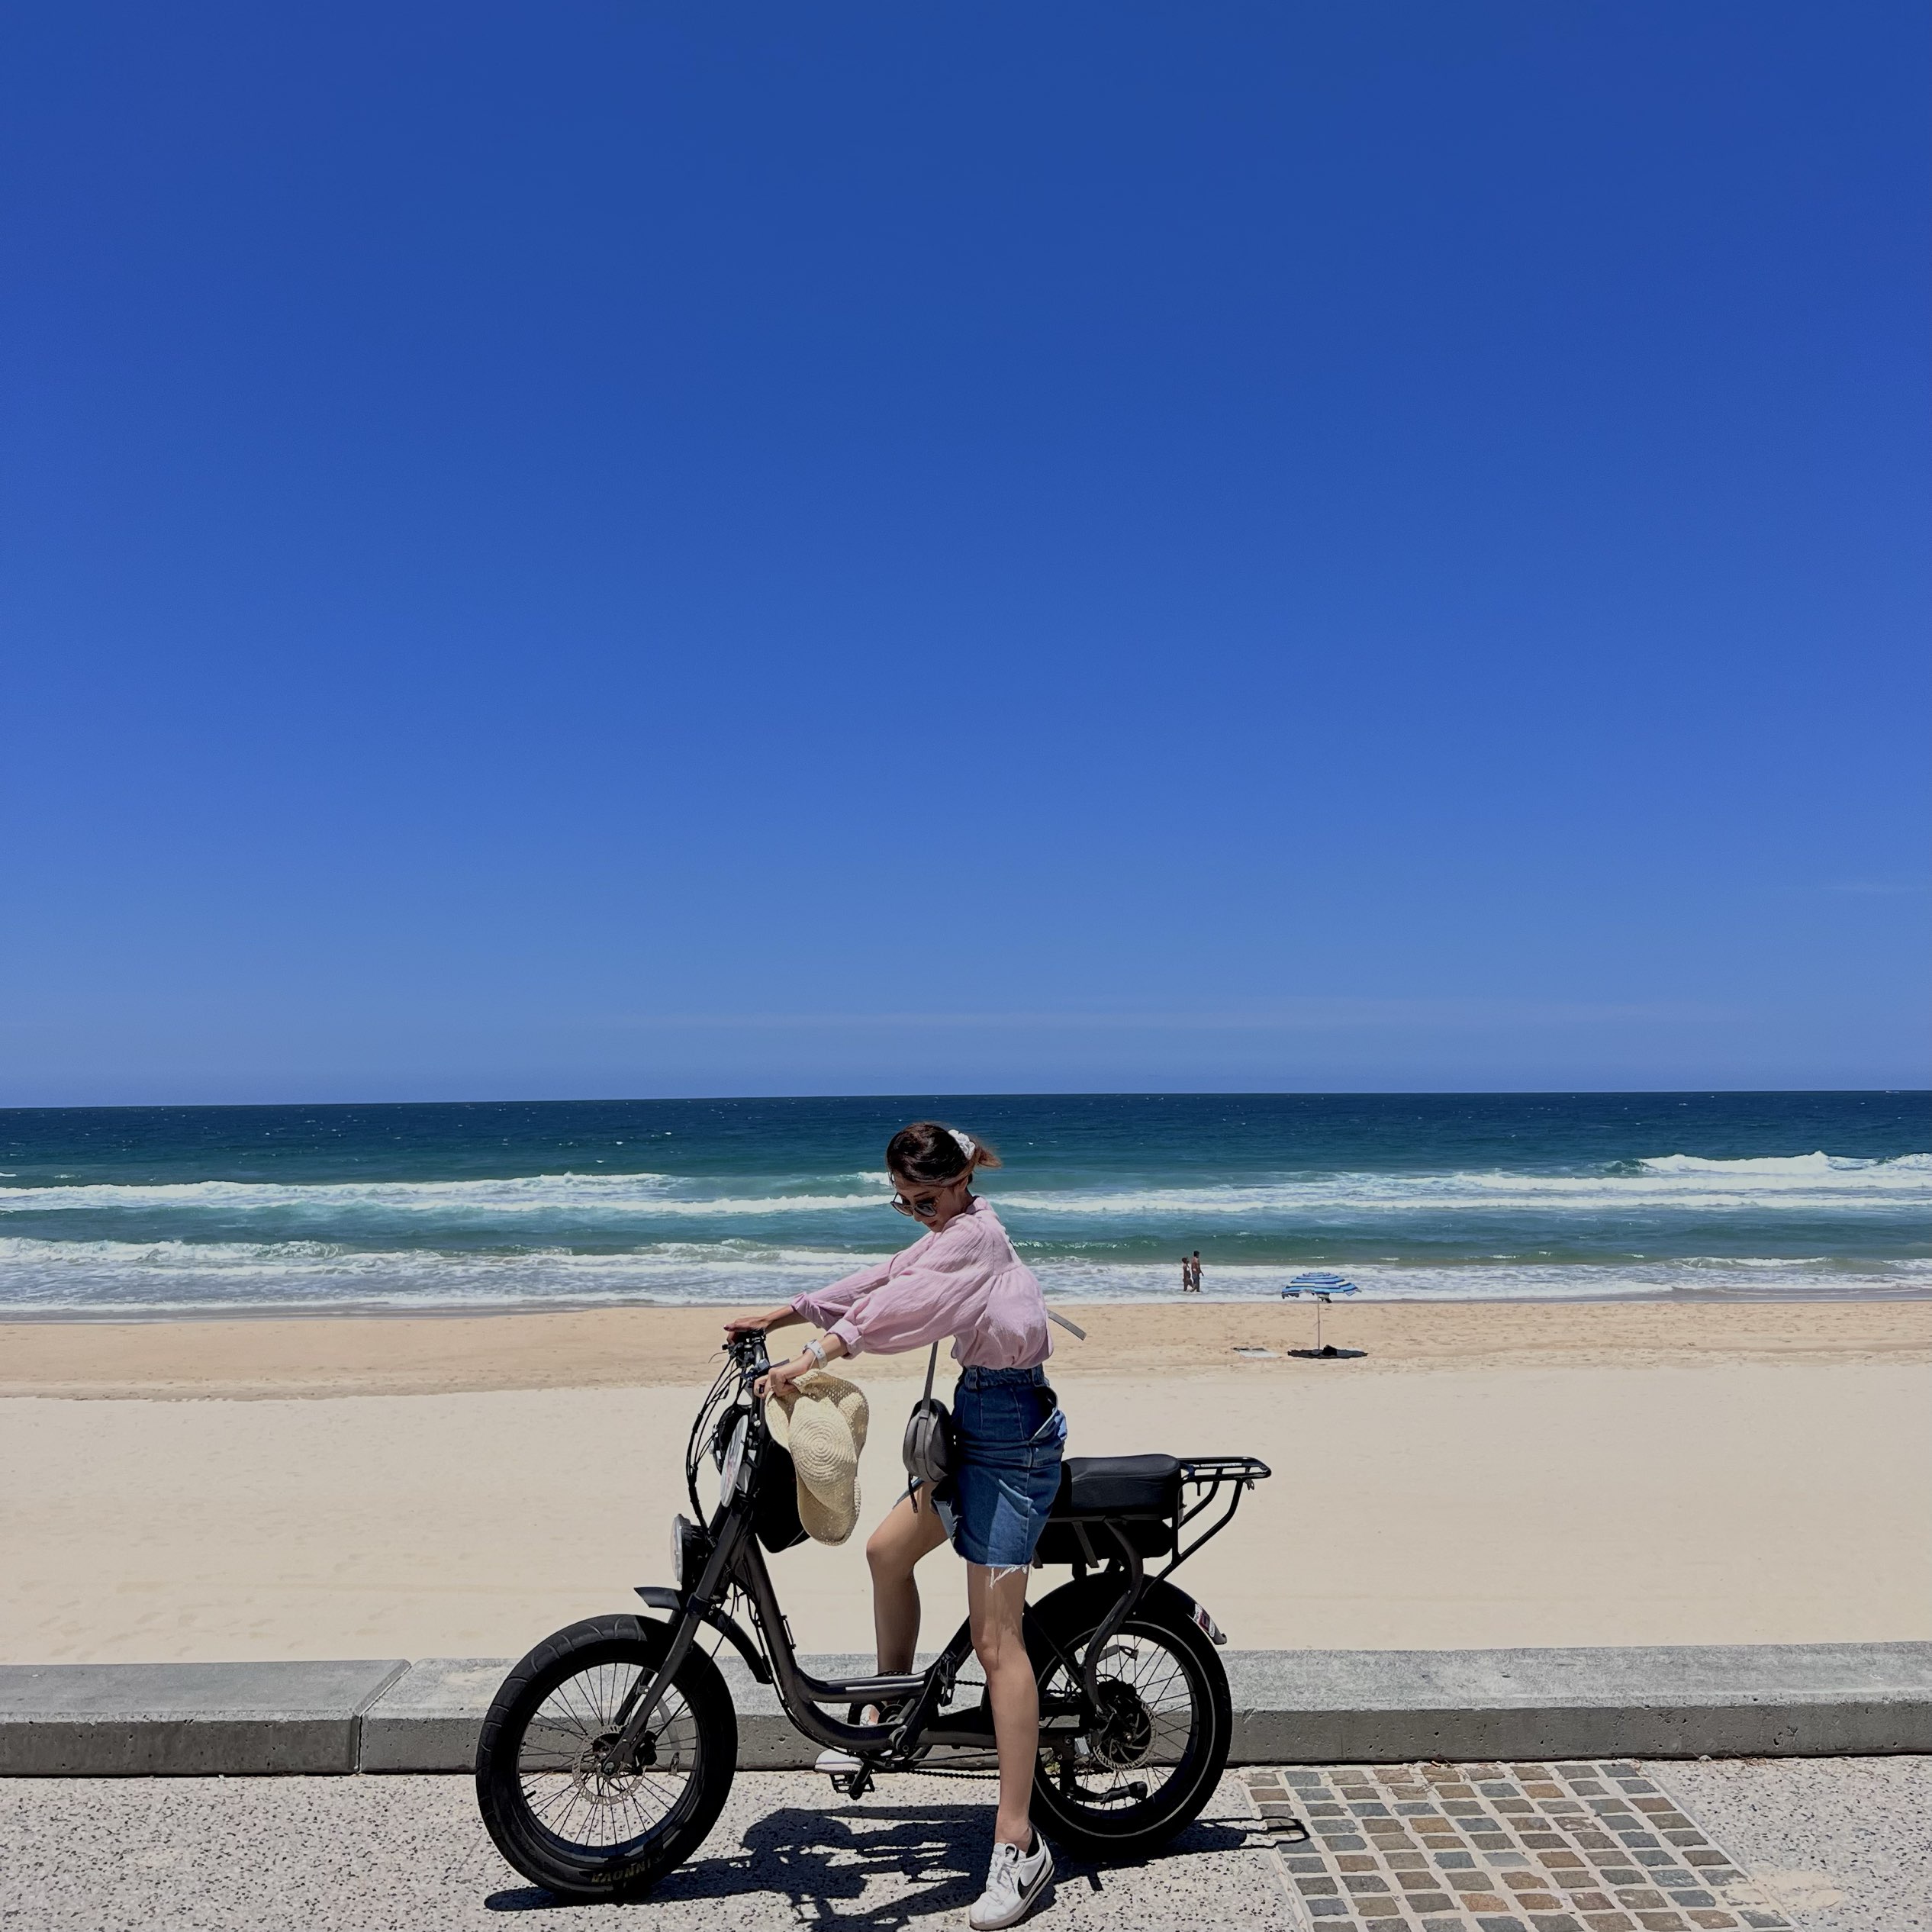 4个季节温暖的天气,澳大利亚黄金海岸!